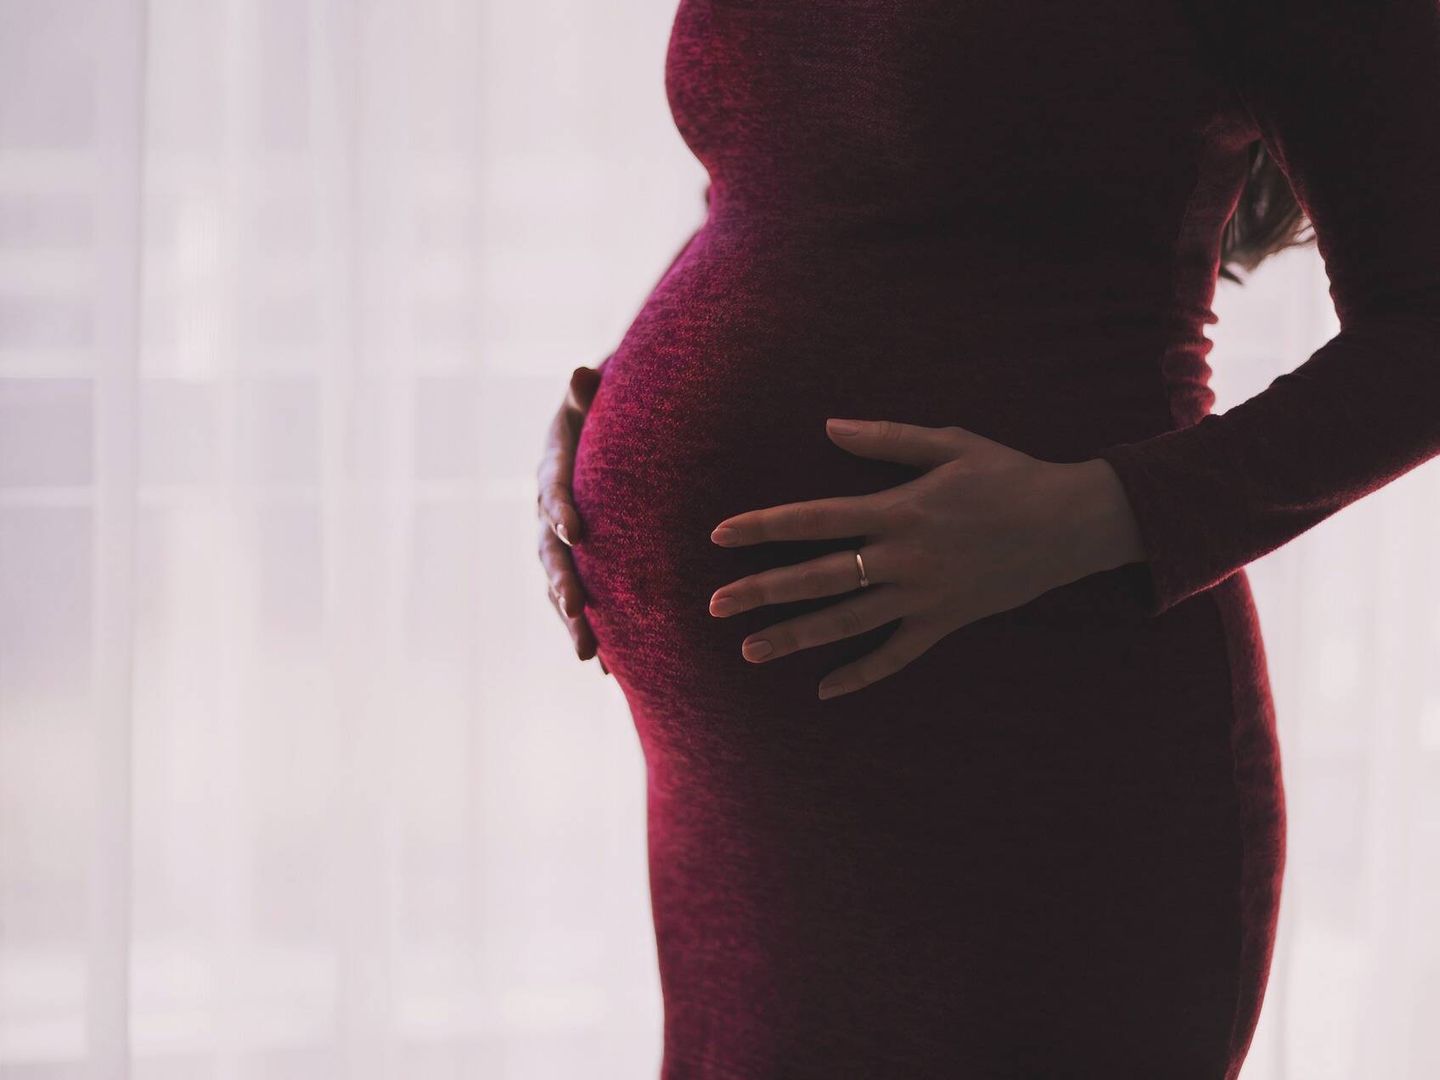 La infertilidad es un problema de salud mundial que afecta a 48 millones de parejas y 186 millones de personas en todo el mundo. (Pixabay)